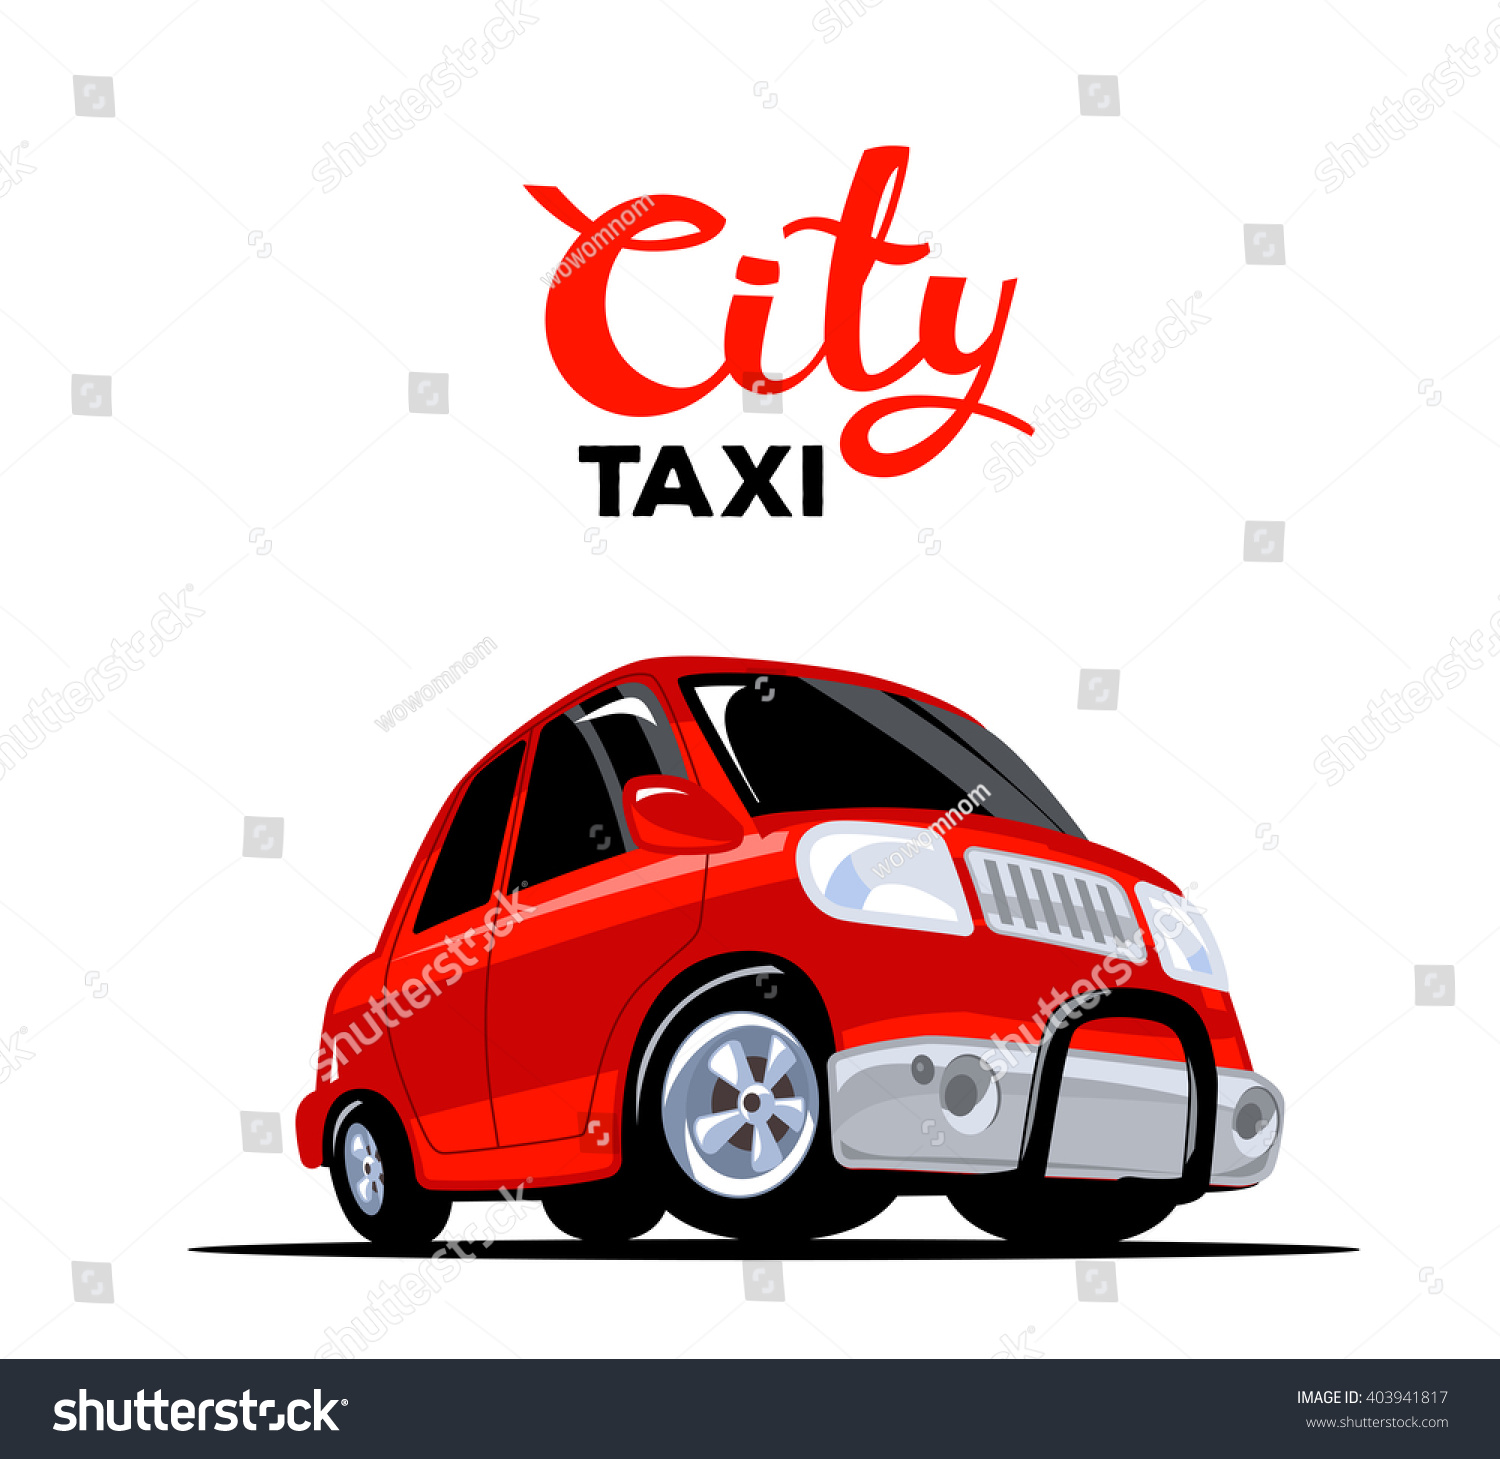 Red taxi программа скачать бесплатно